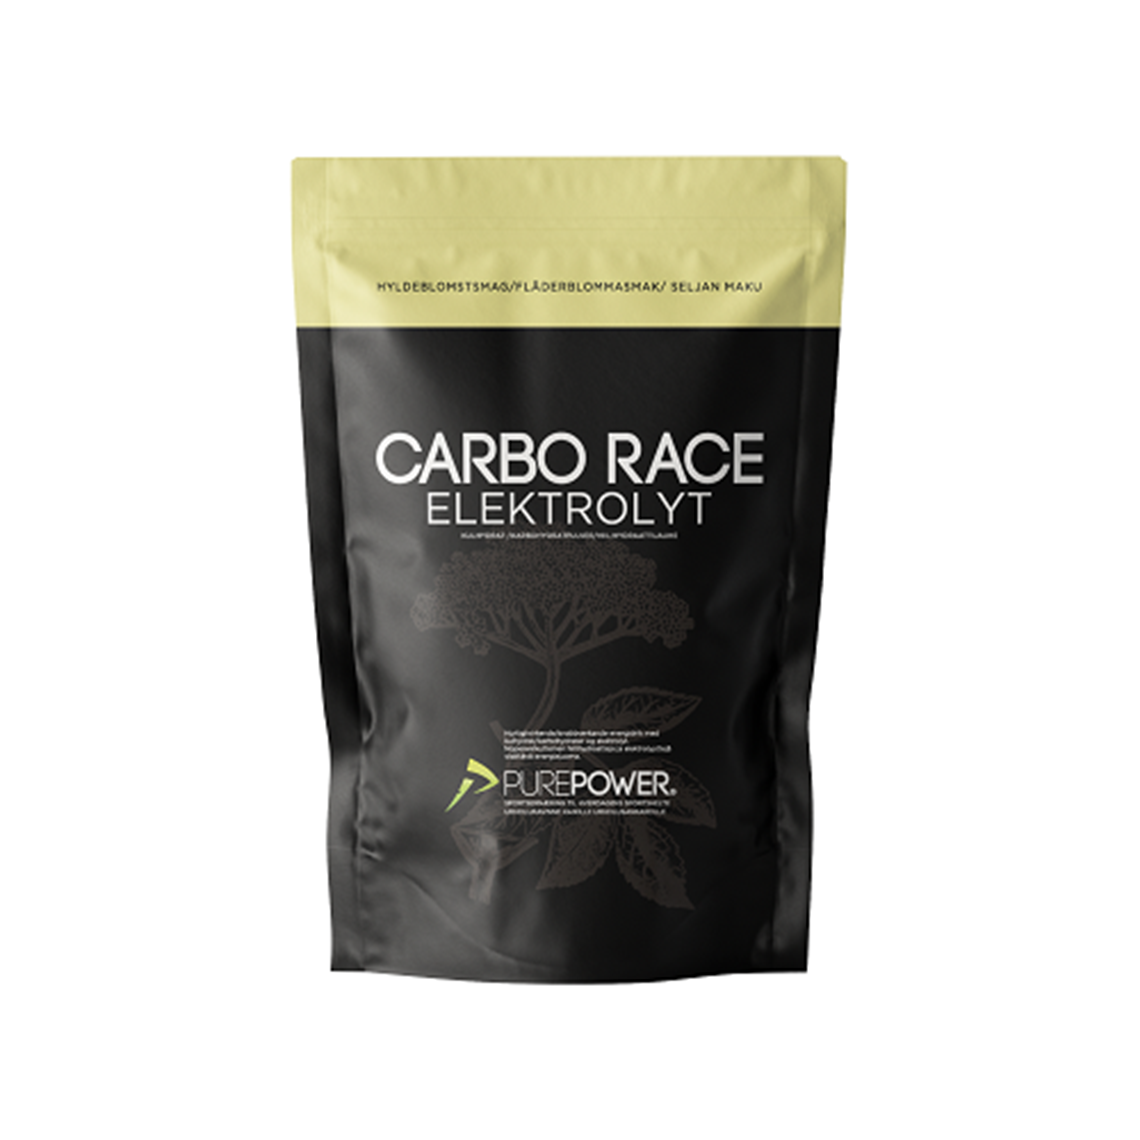 Carbo Race Electrolyte Elderflower 1 kg